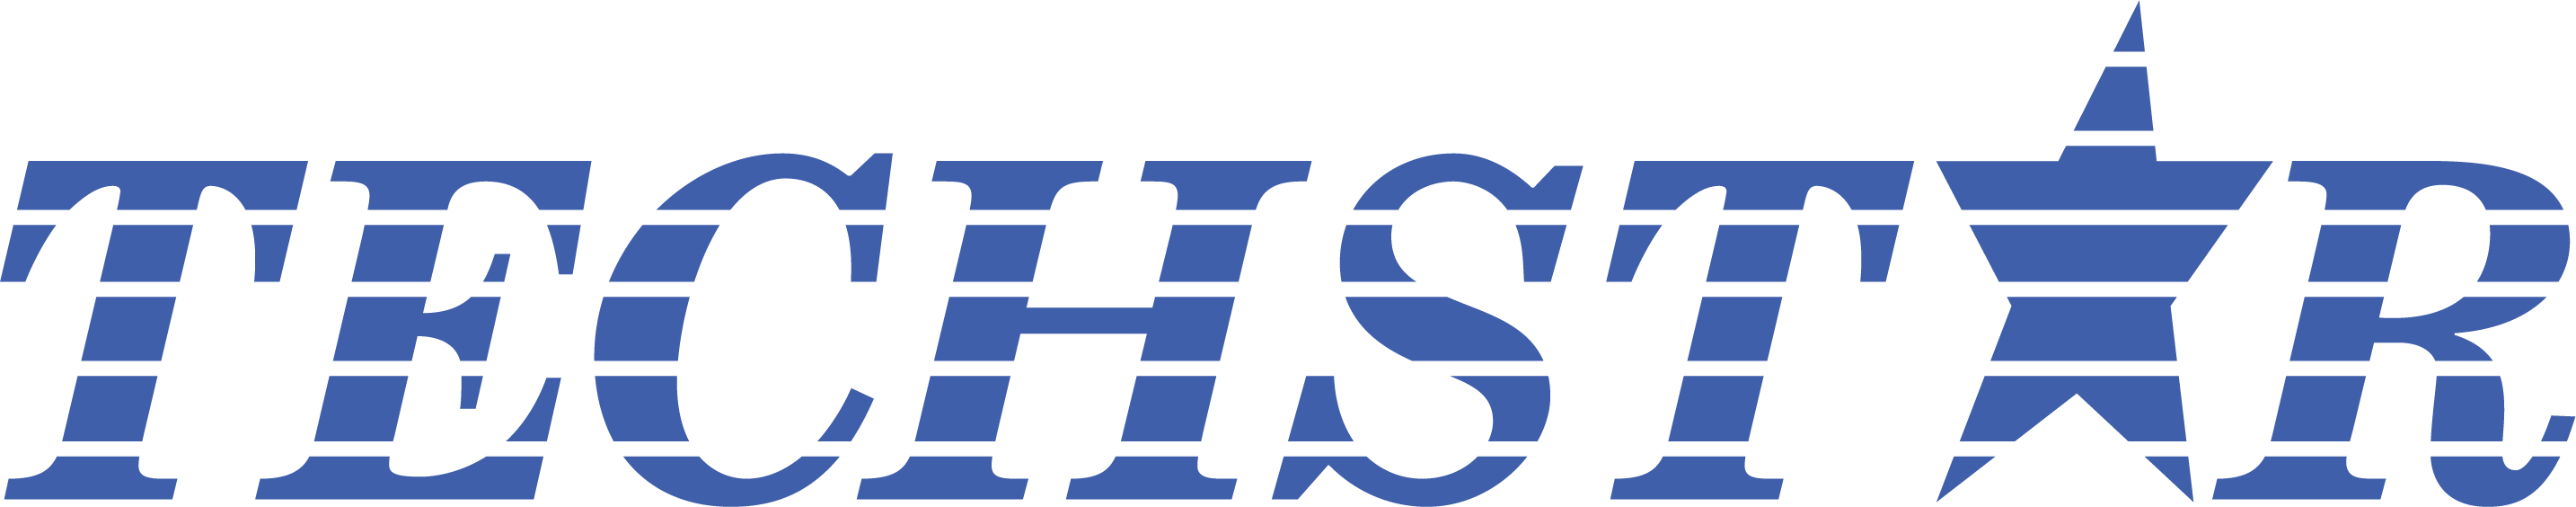 TechStar Training logo